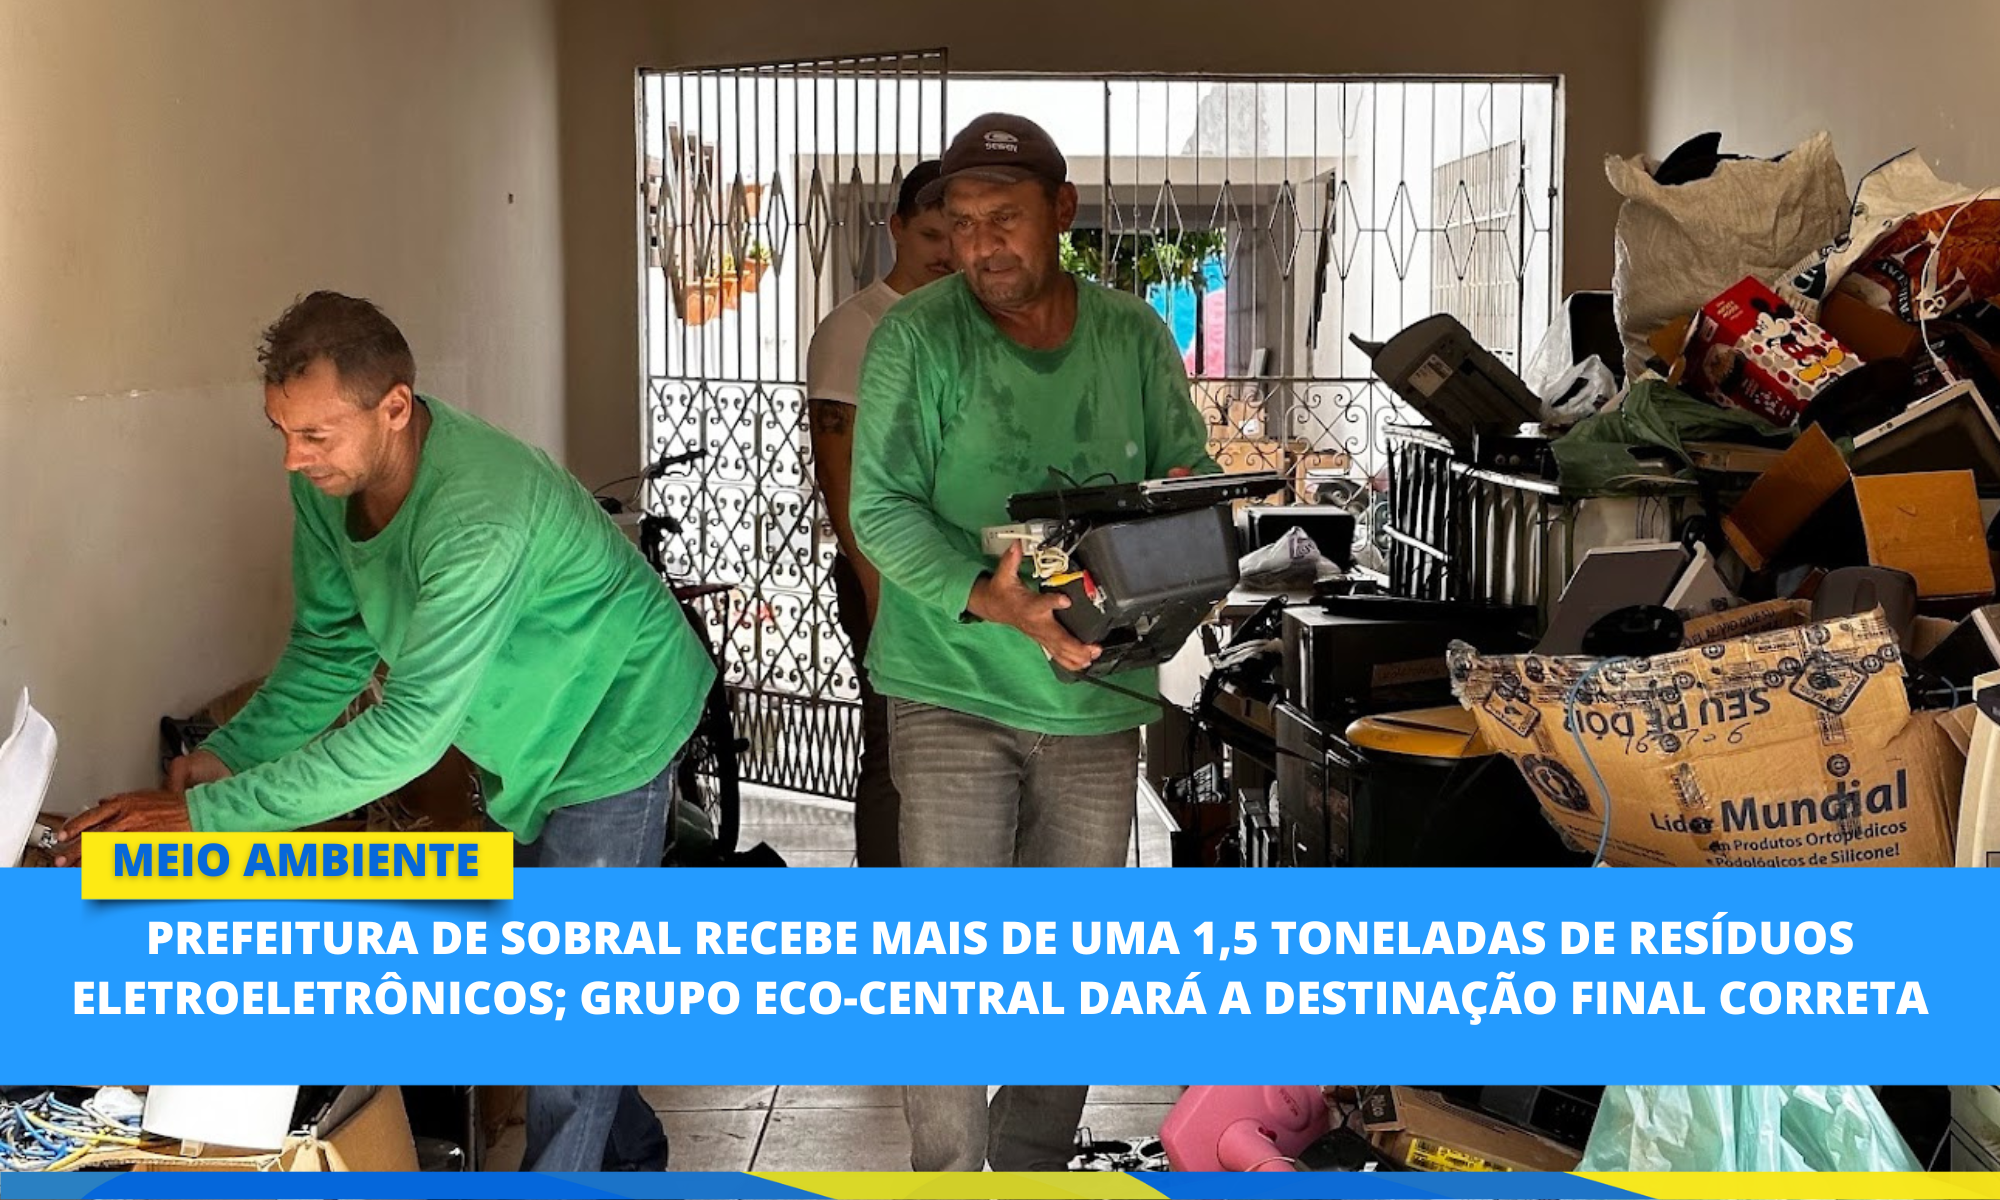 Prefeitura de Sobral recebe mais de uma 1,5 tonelada de resíduos eletroeletrô...